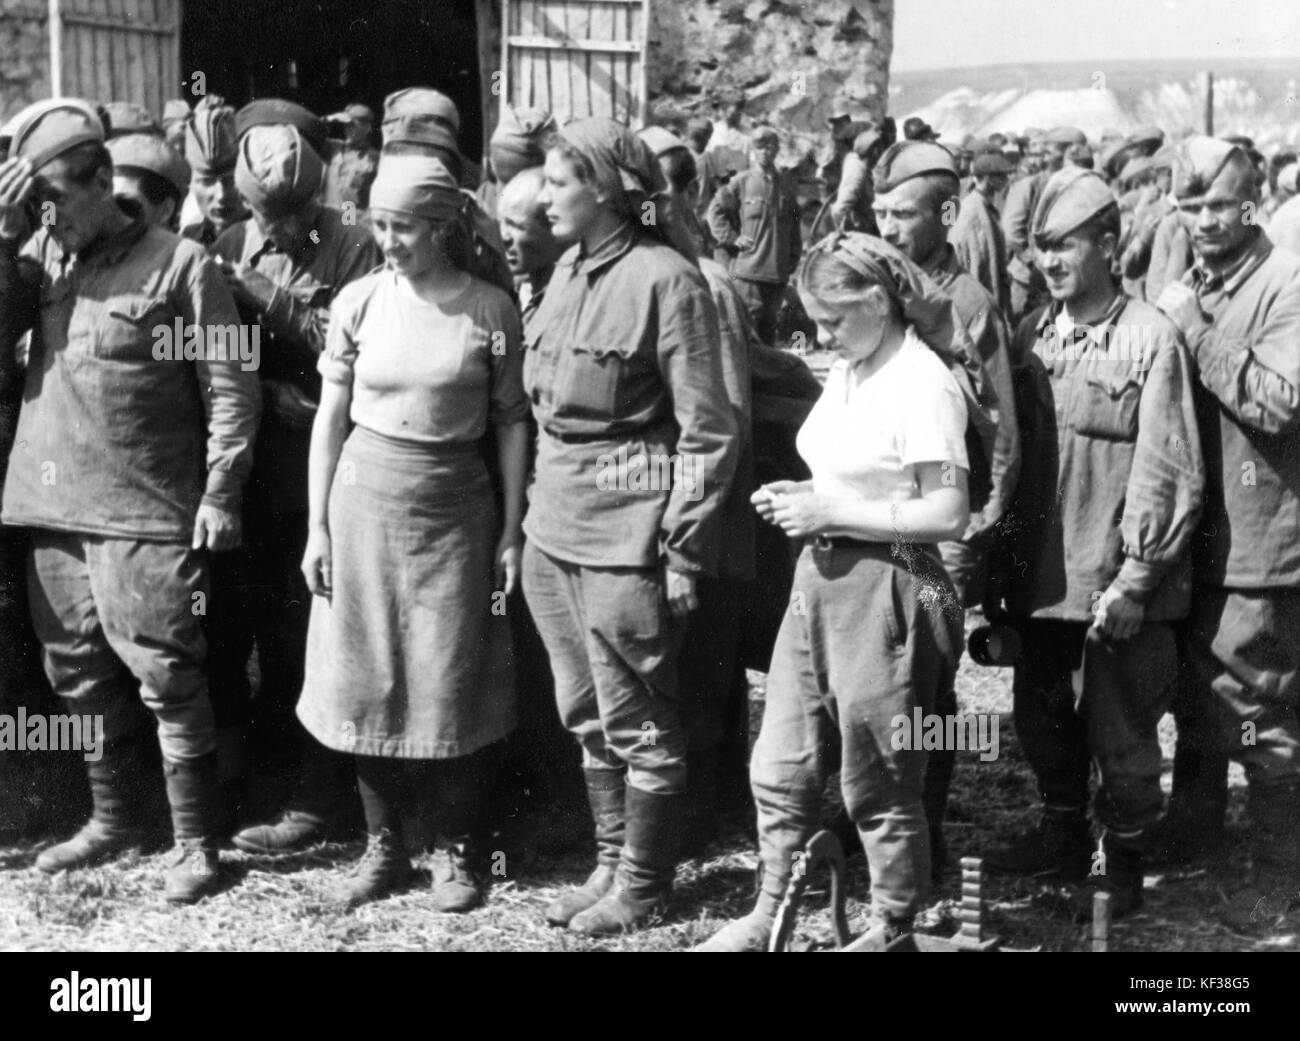 Prisoner of war, woman soldier, Soviet soldier  73899 Stock Photo